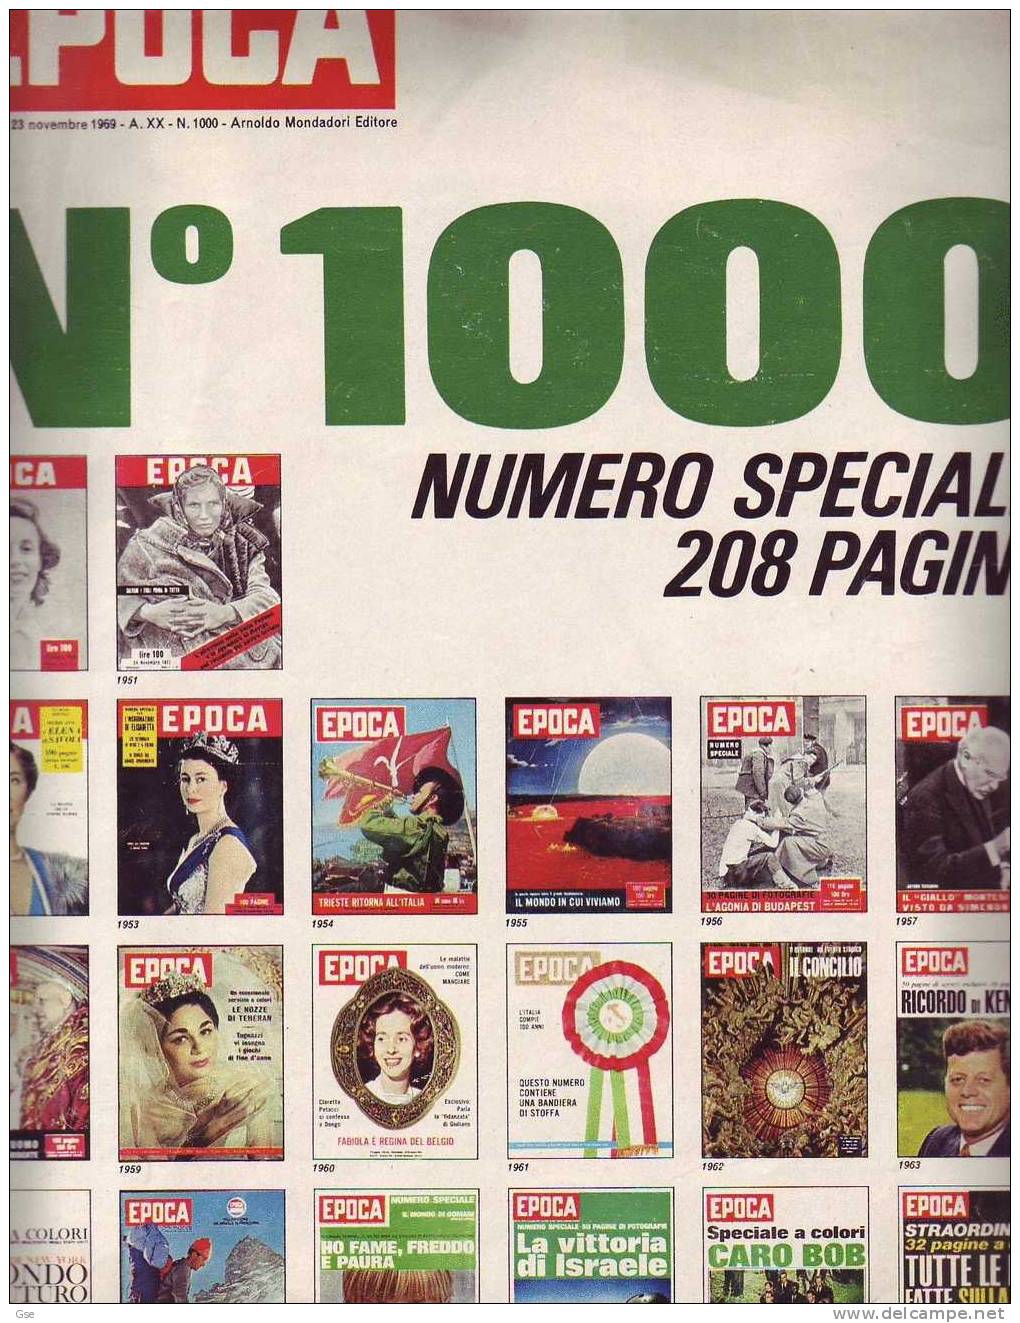 EPOCA 1969 - Numero 1.000 - Speciale Di 208 Pagine - First Editions